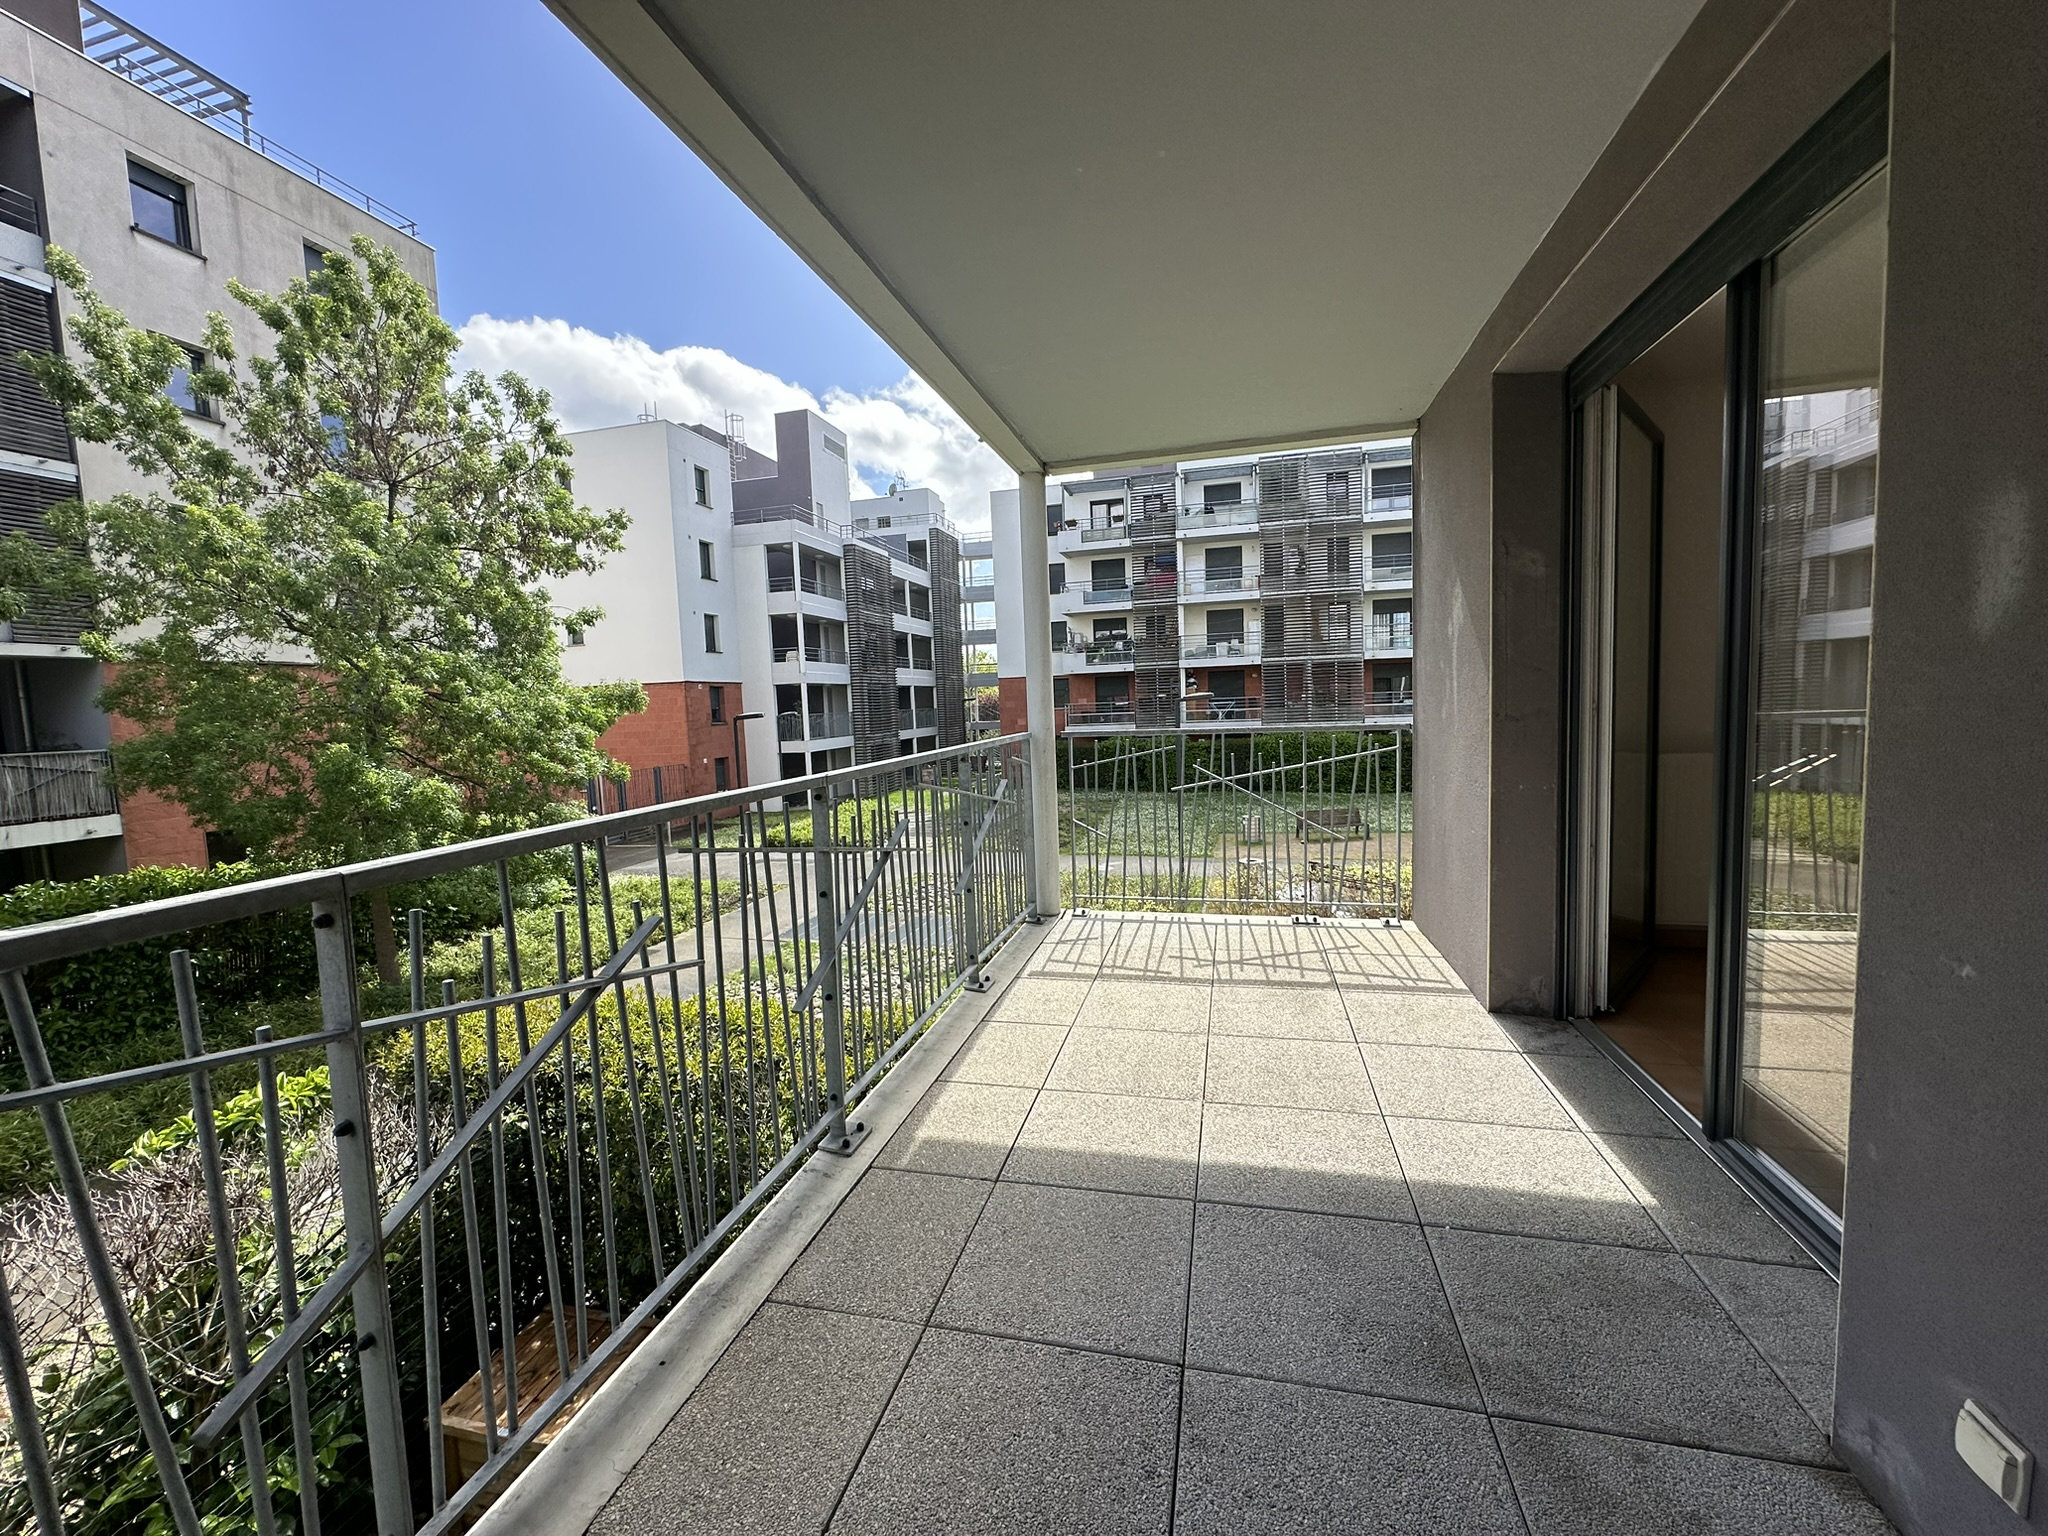 En exclusivité - A vendre - Appartement T3 en étage de 5960 m2 - Spacieux balcon et vue sur jardin plein Sud (3 pièces, 60 m²) Bleriot